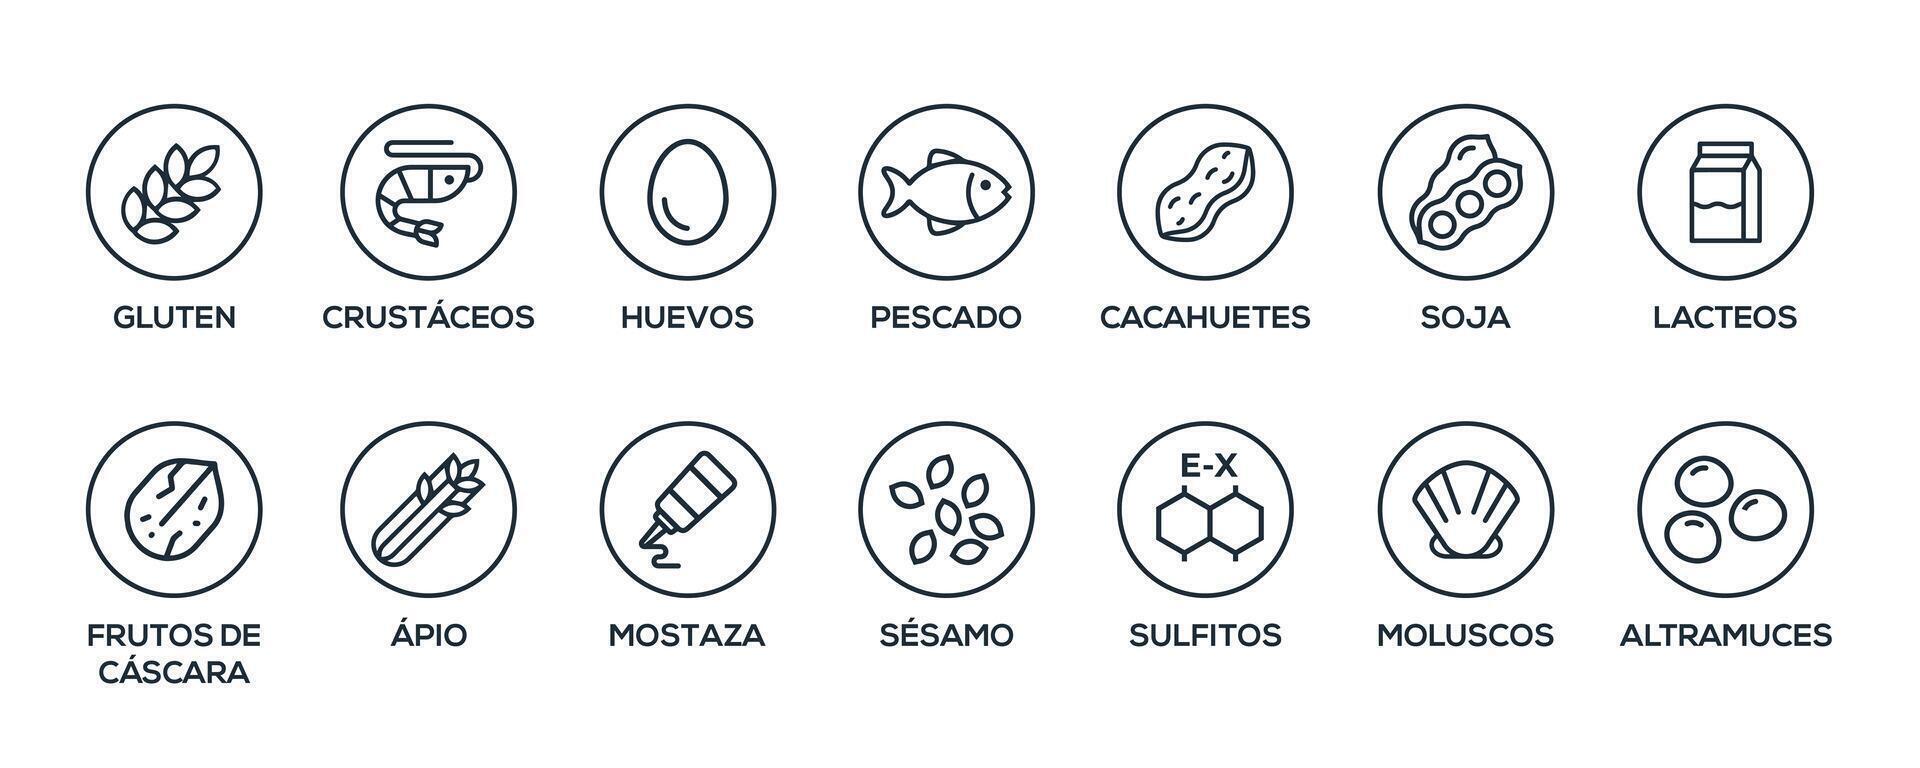 Facile isolé vecteur logo ensemble badge ingrédient avertissement étiqueter. noir et blanc allergènes Icônes. nourriture intolérance. le 14 allergènes obligatoire à déclarer écrit dans Espagnol